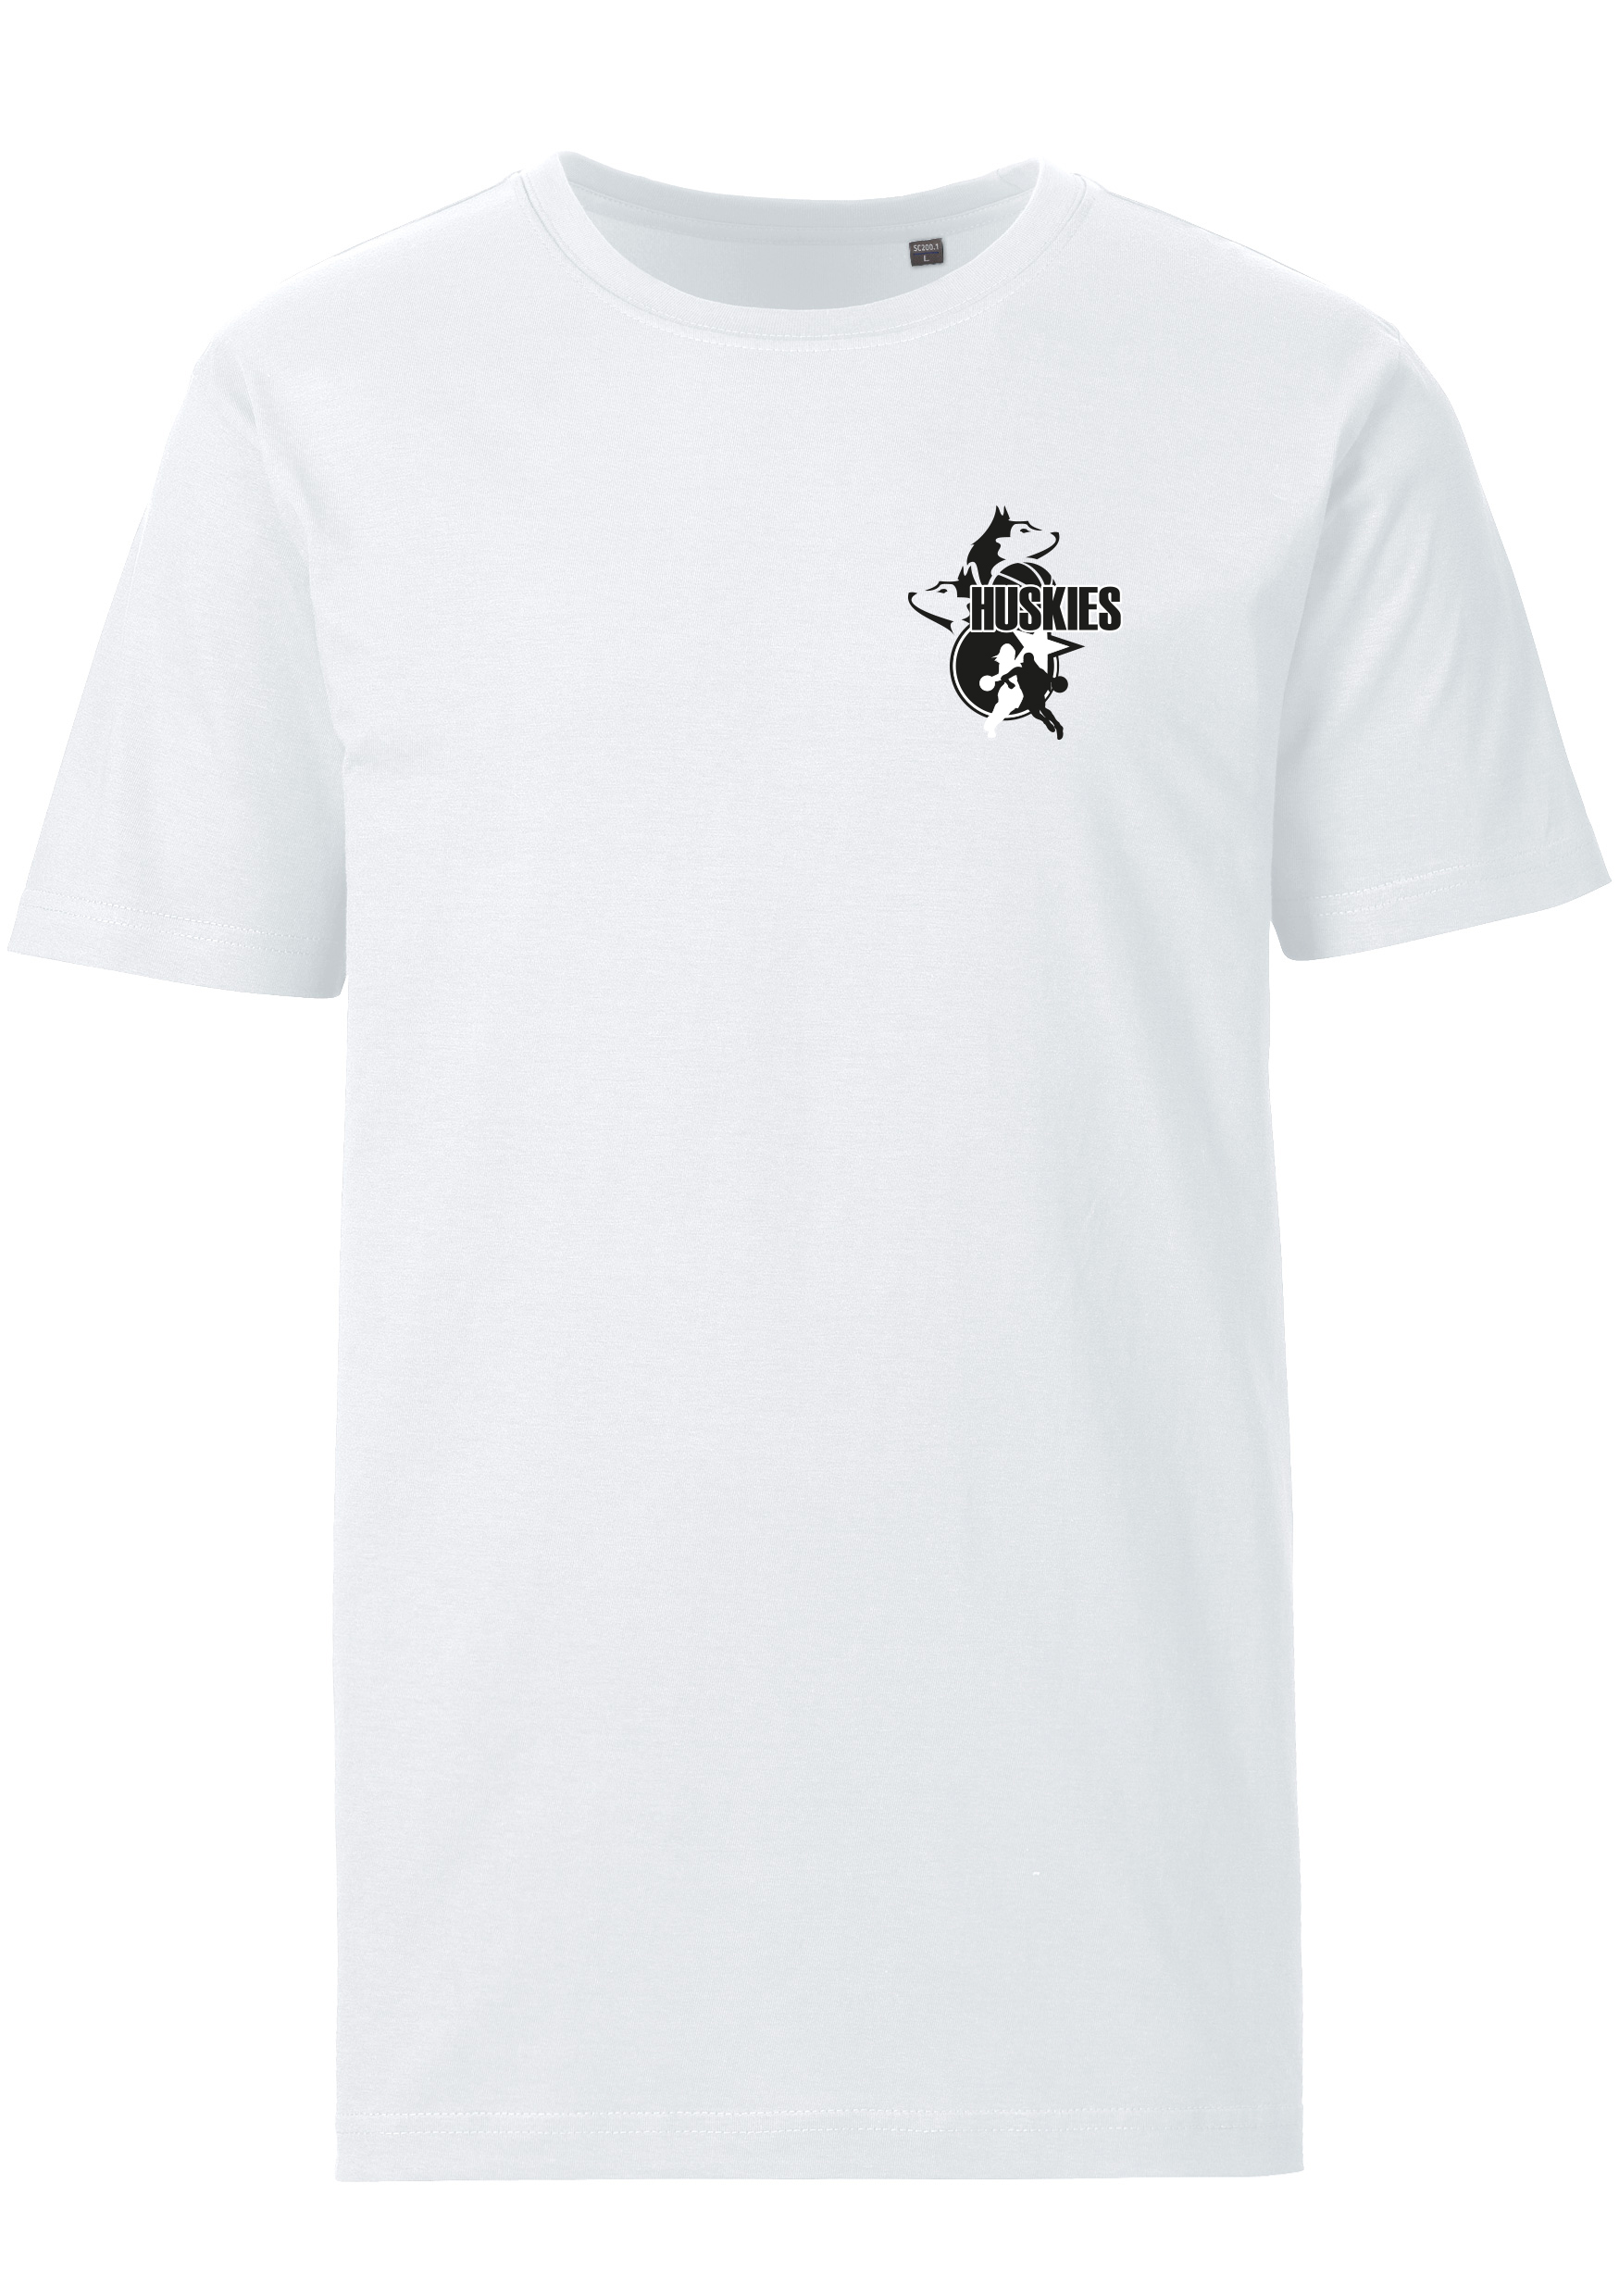 Huskies T-Shirt Logo klein weiß